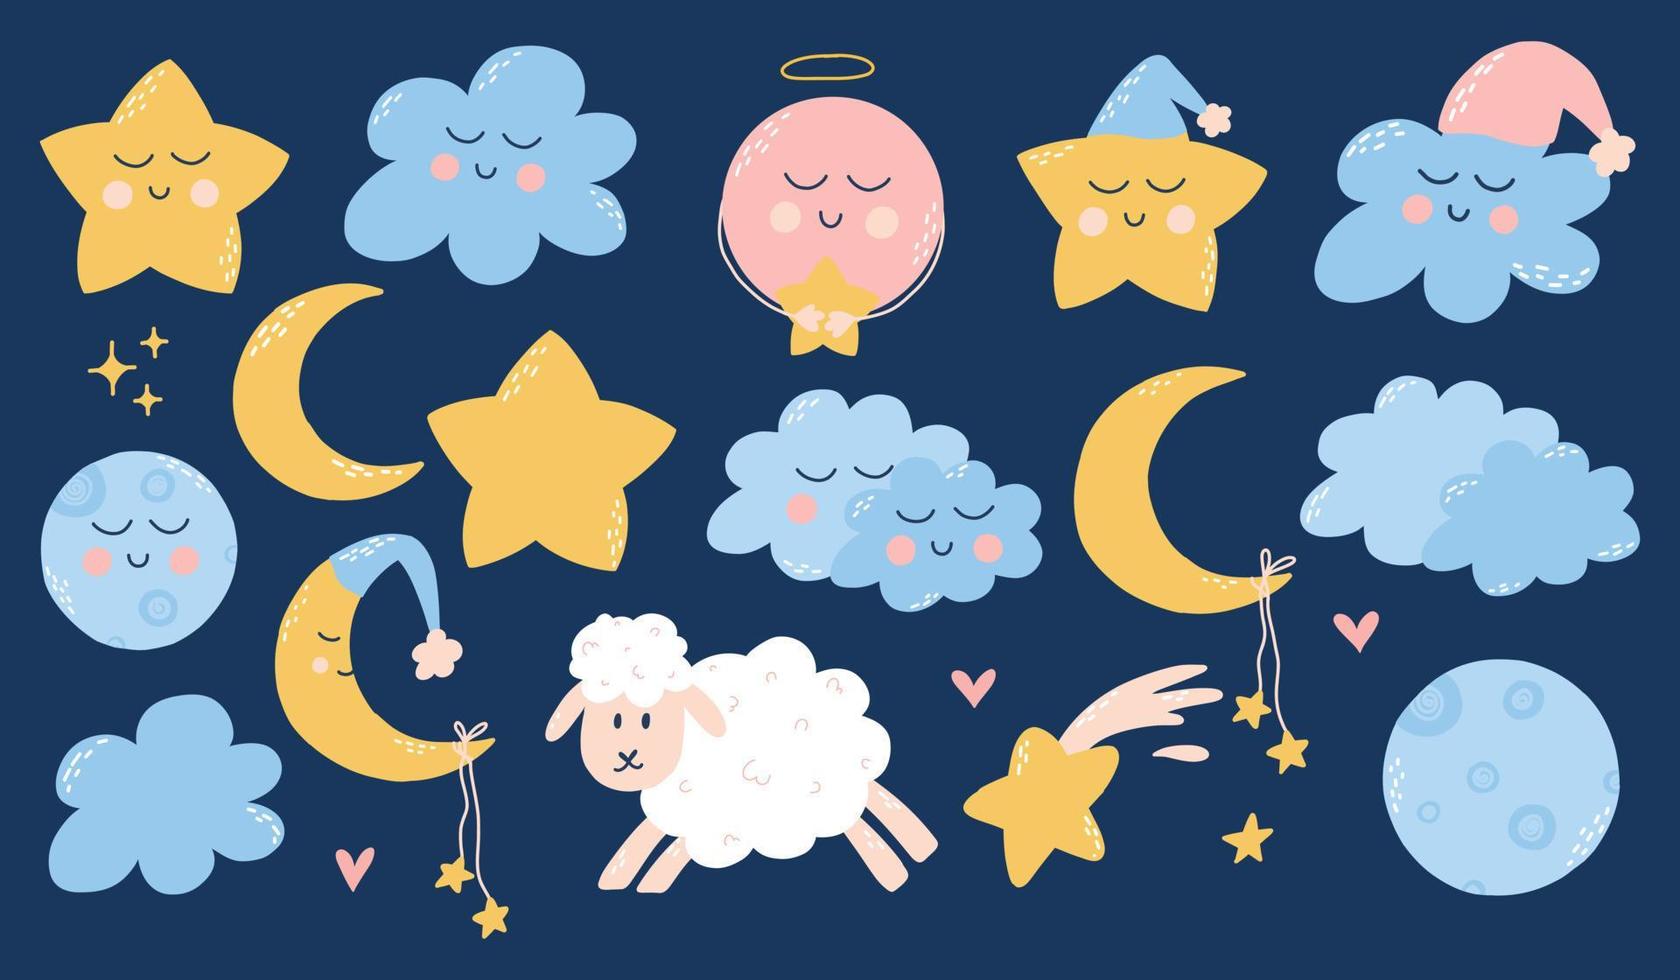 bonito conjunto infantil de elementos de boa noite. coleção infantil de estrelas, nuvens, luas, planetas. ilustração vetorial estilo cartoon desenhado na mão. vetor